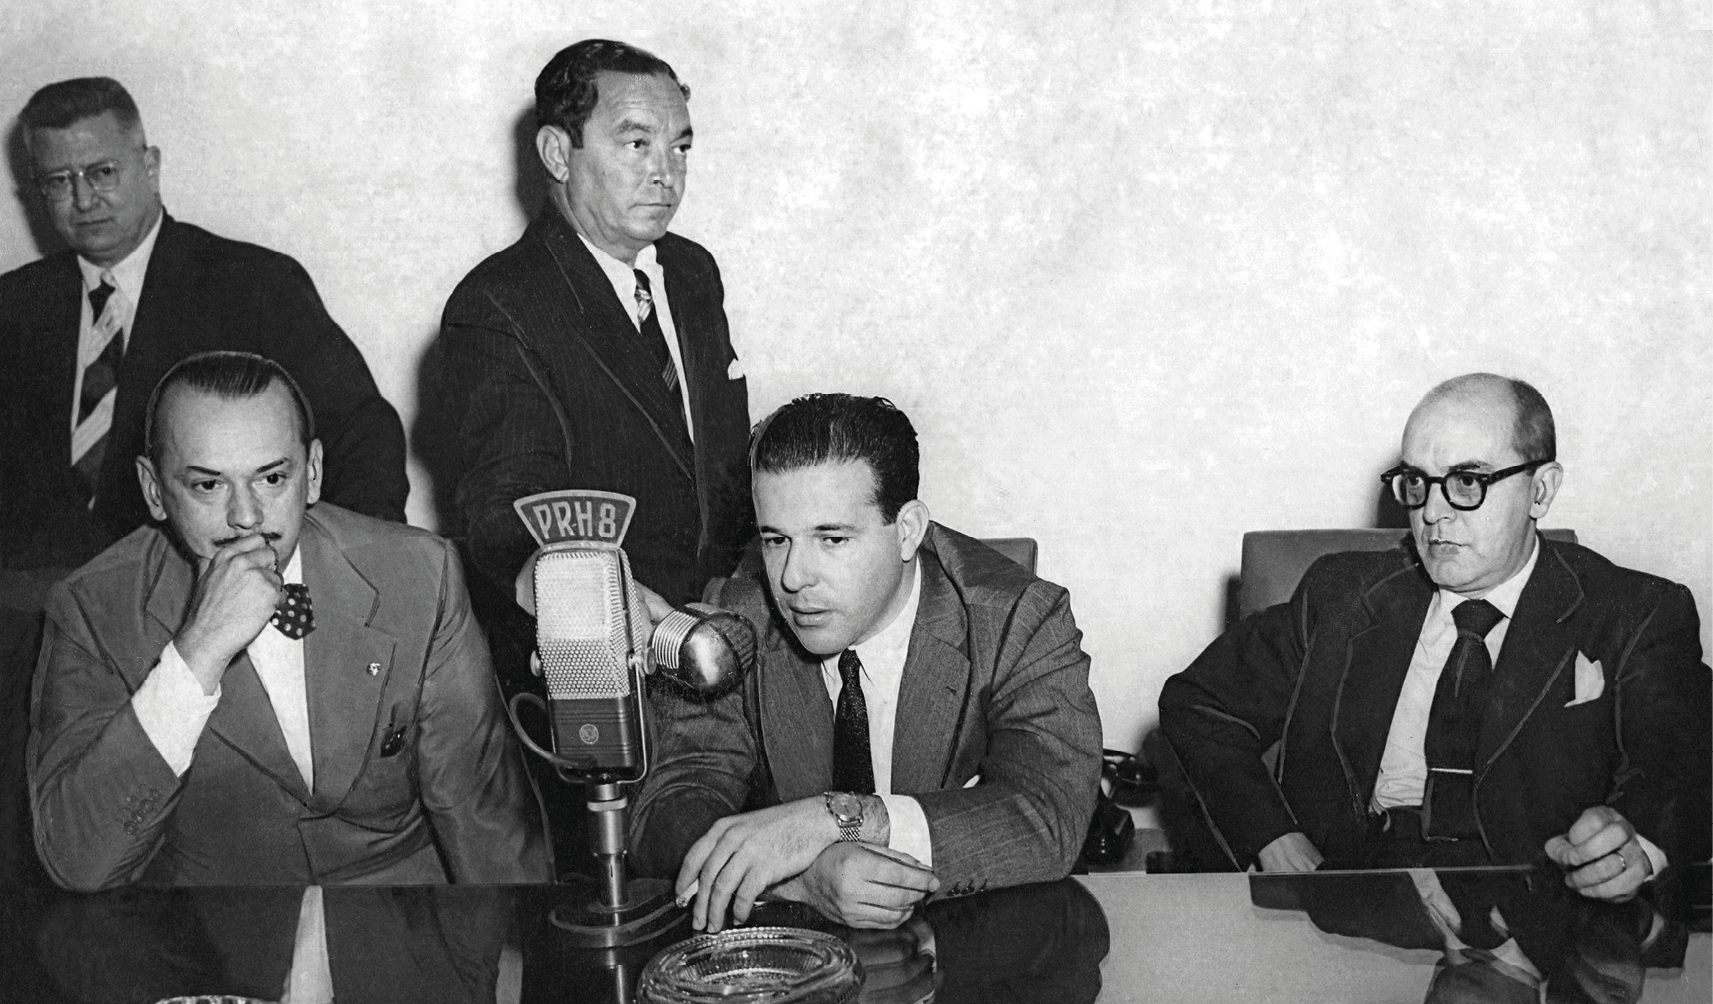 Fotografia em preto e branco. Três homens sentados à mesa. O homem do meio é Jango que está falando ao telefone.  Atrás deles, dois homens em pé.